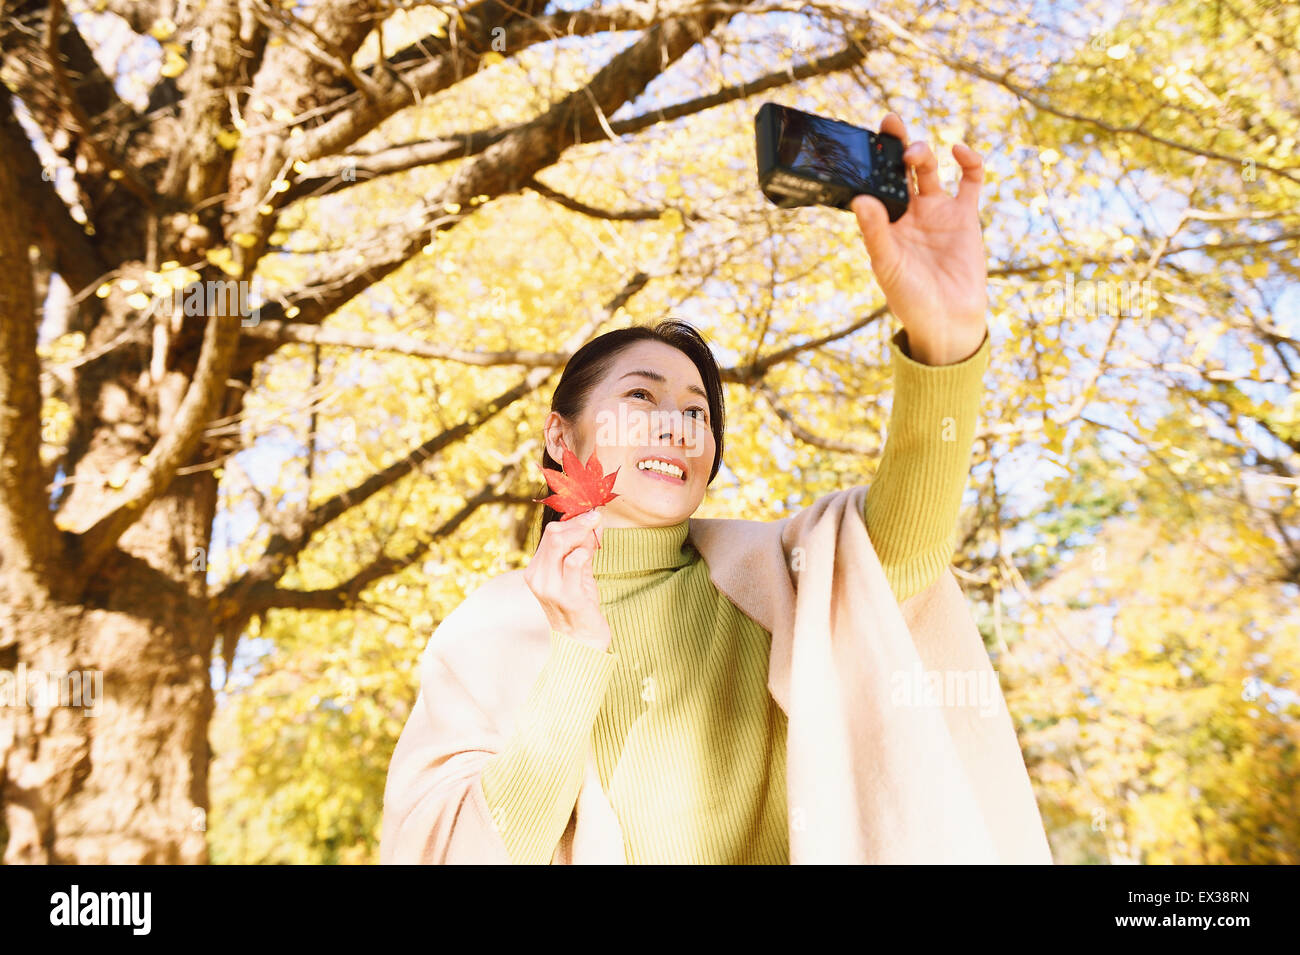 Senior donna giapponese prendendo un selfie in un parco della città in autunno Foto Stock